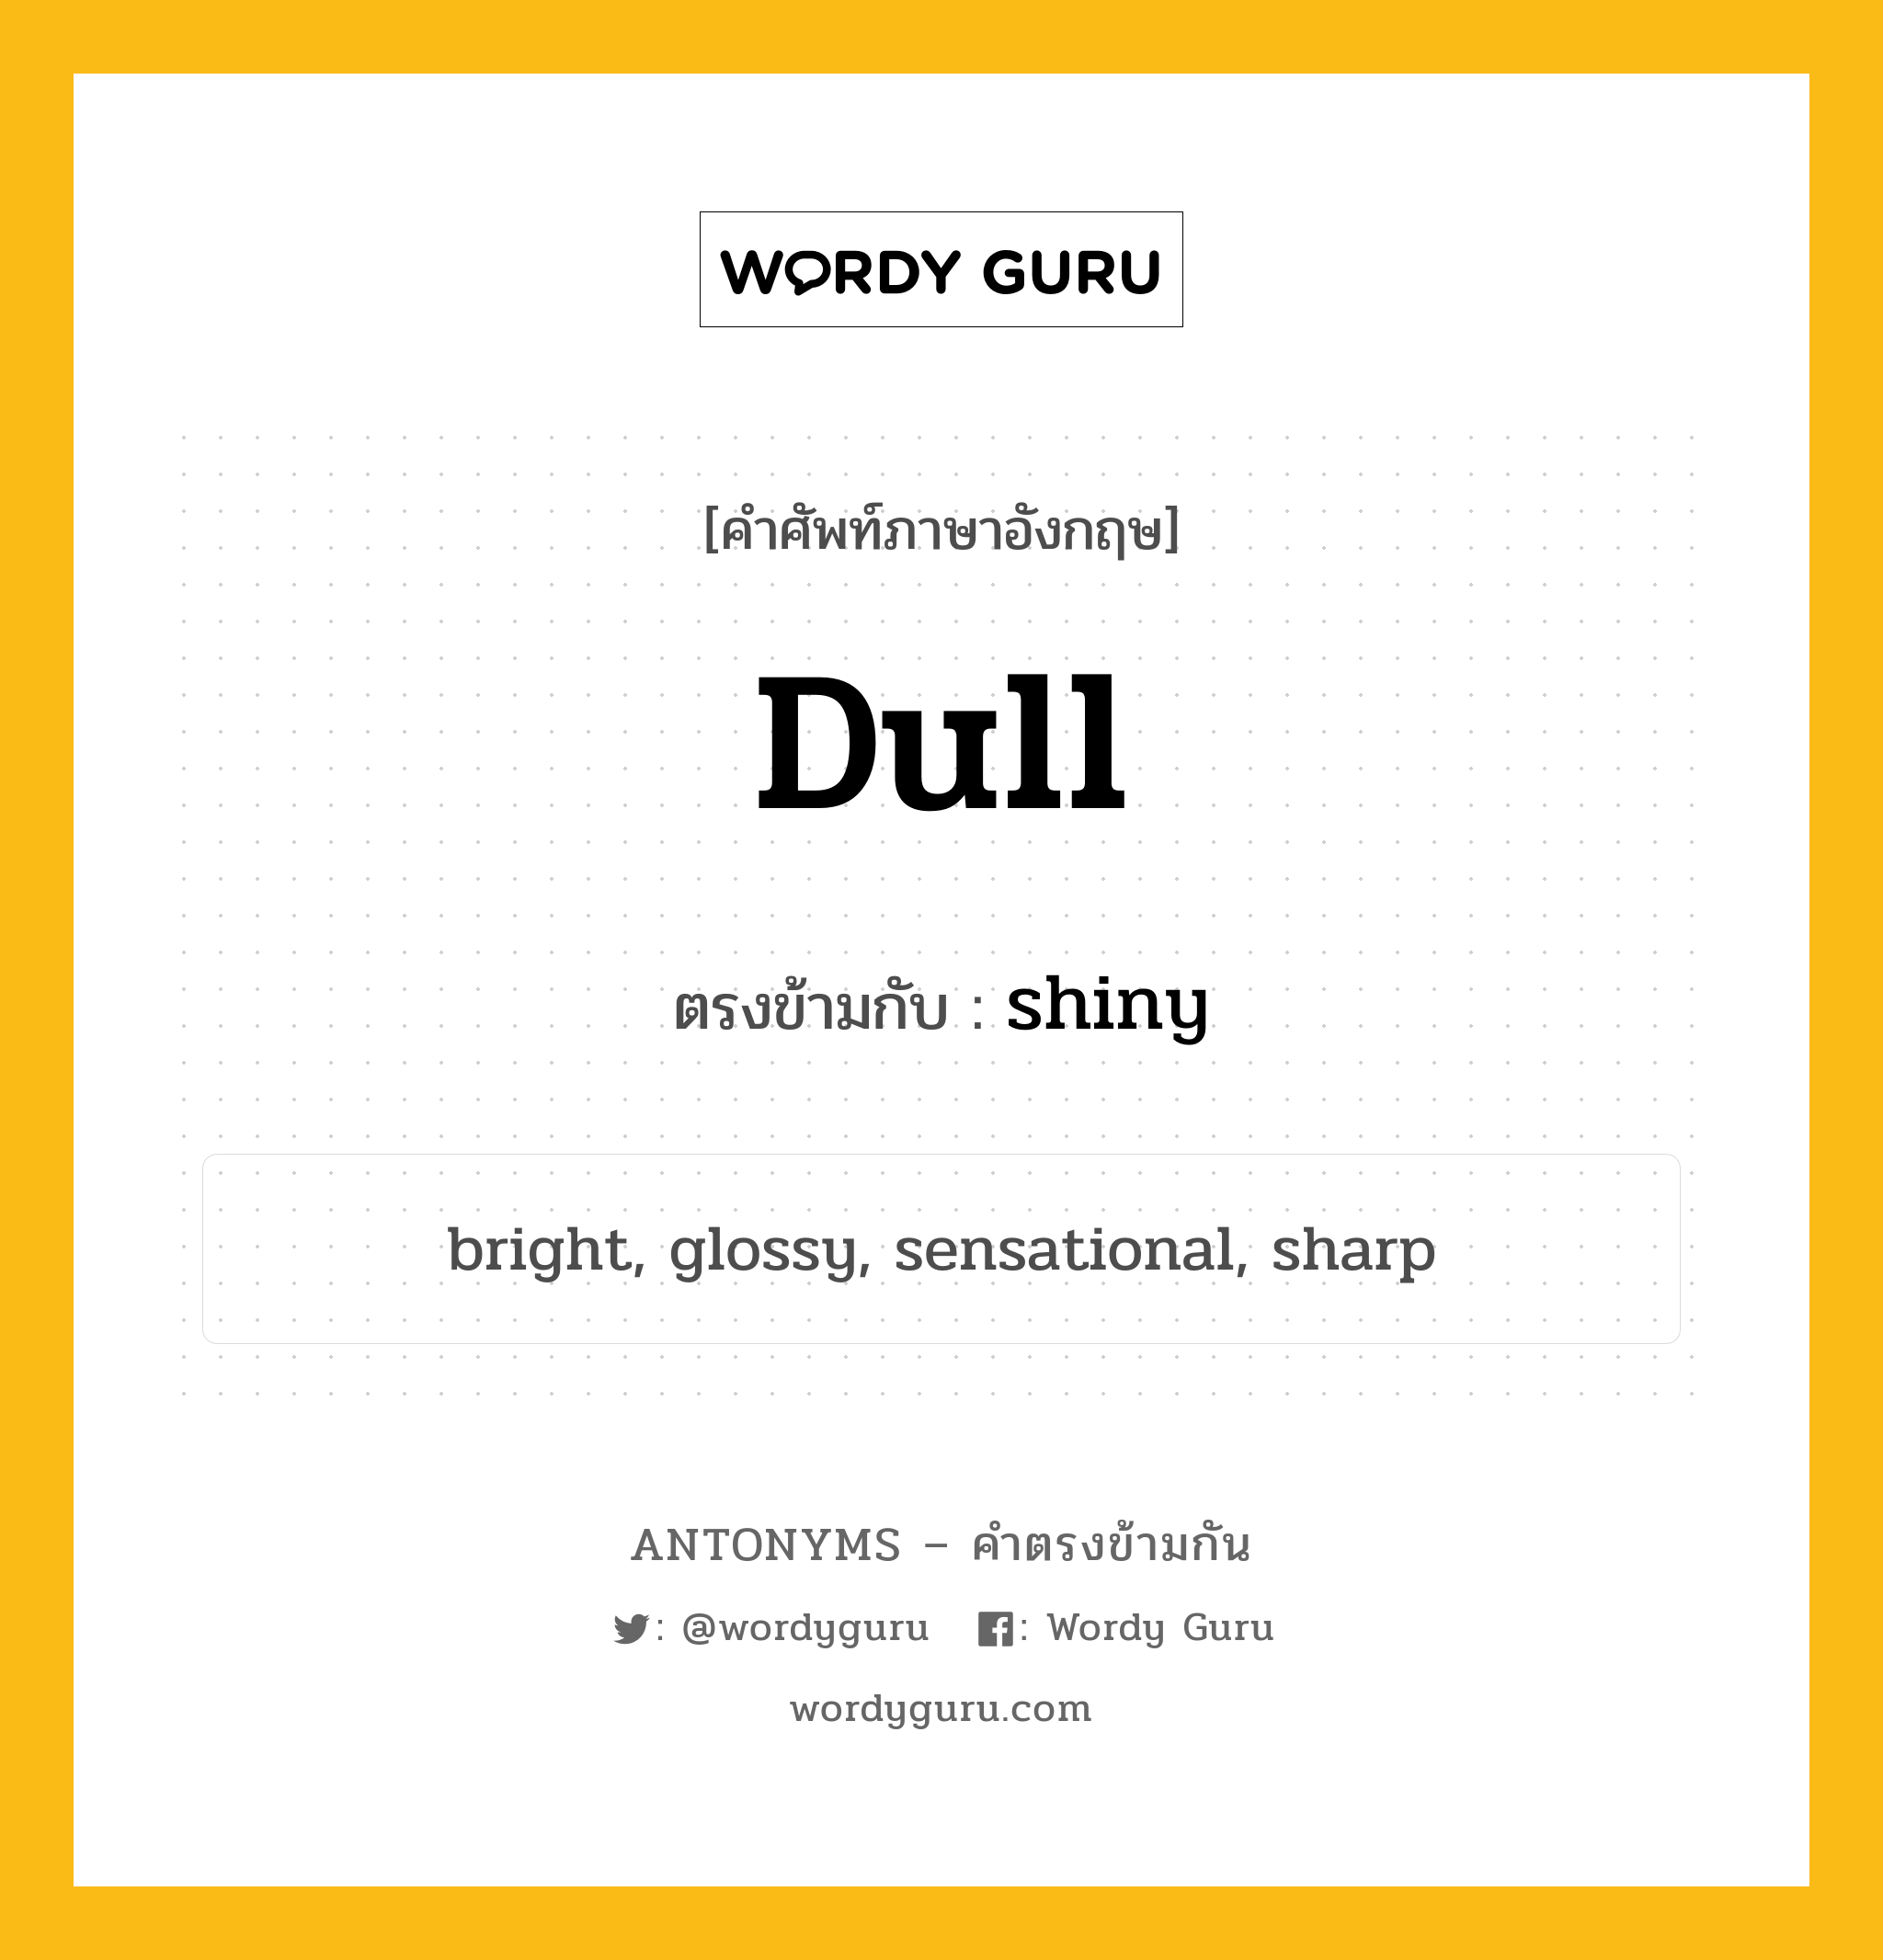 dull เป็นคำตรงข้ามกับคำไหนบ้าง?, คำศัพท์ภาษาอังกฤษ dull ตรงข้ามกับ shiny หมวด shiny